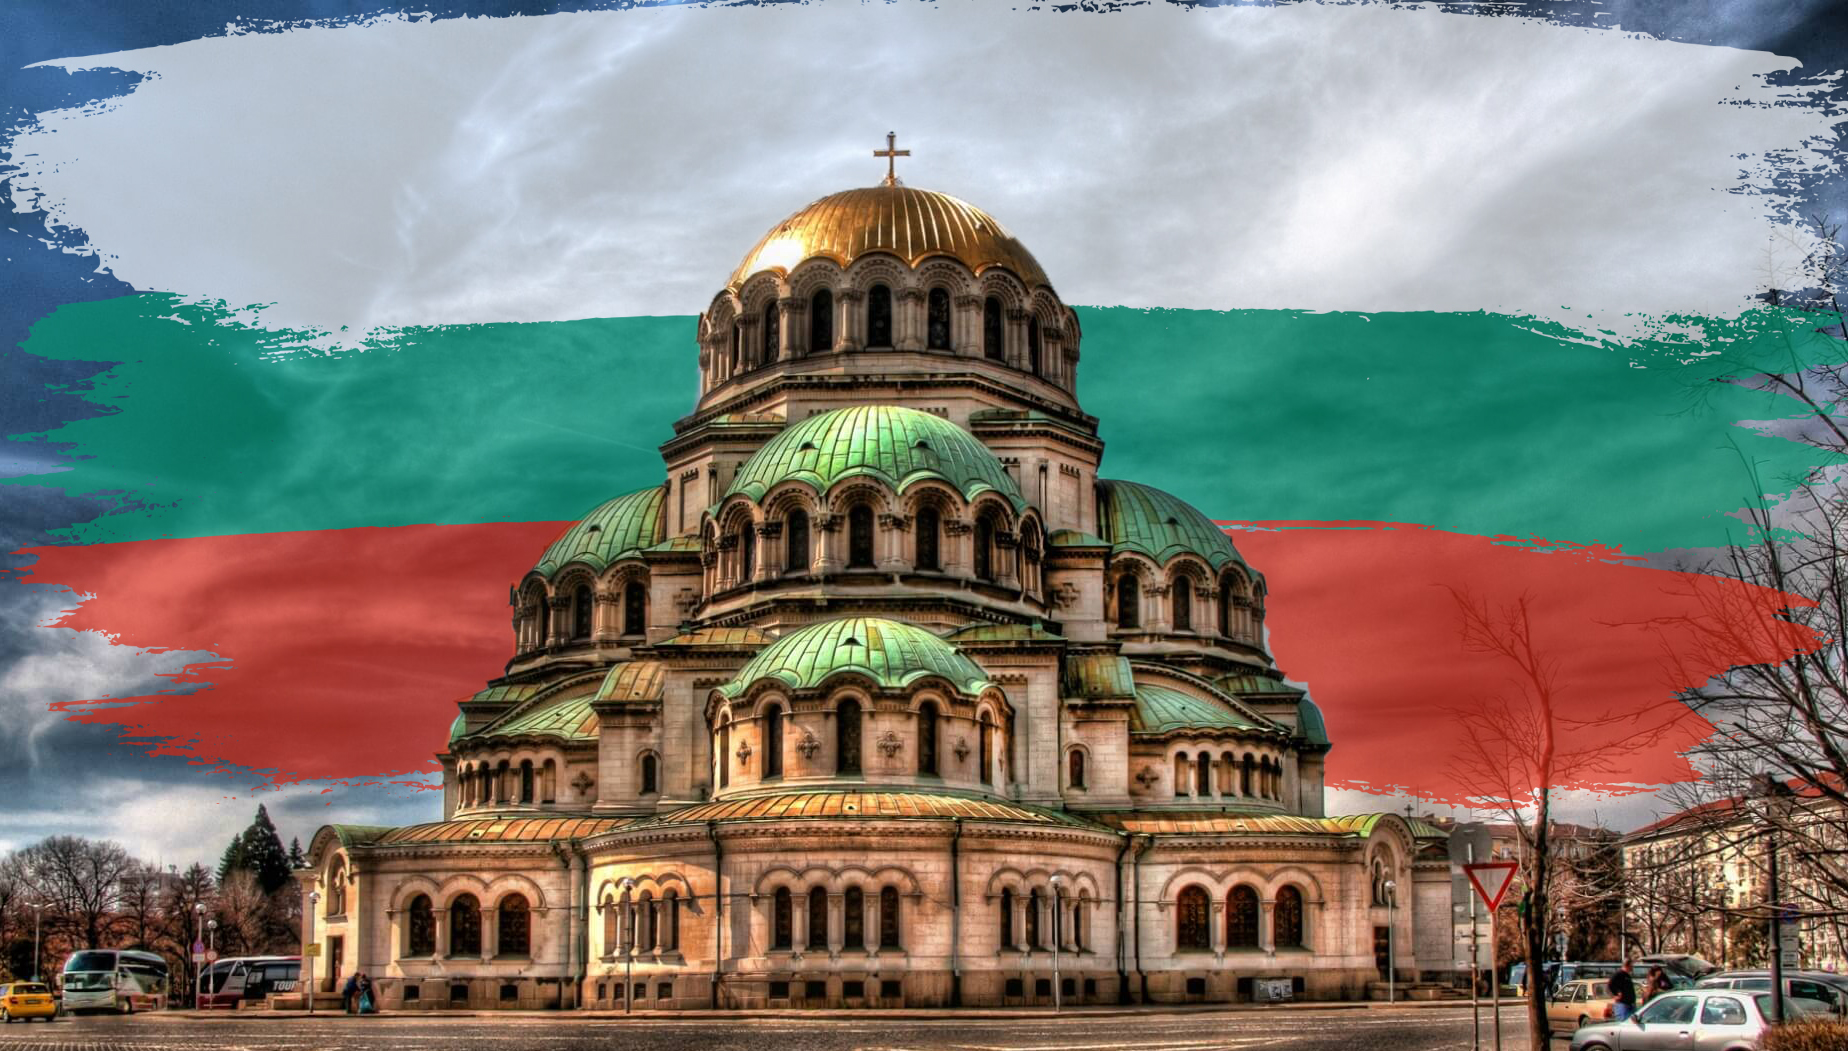 Bulgaristan Da Gorebileceginiz 5 Yer Turna Blog